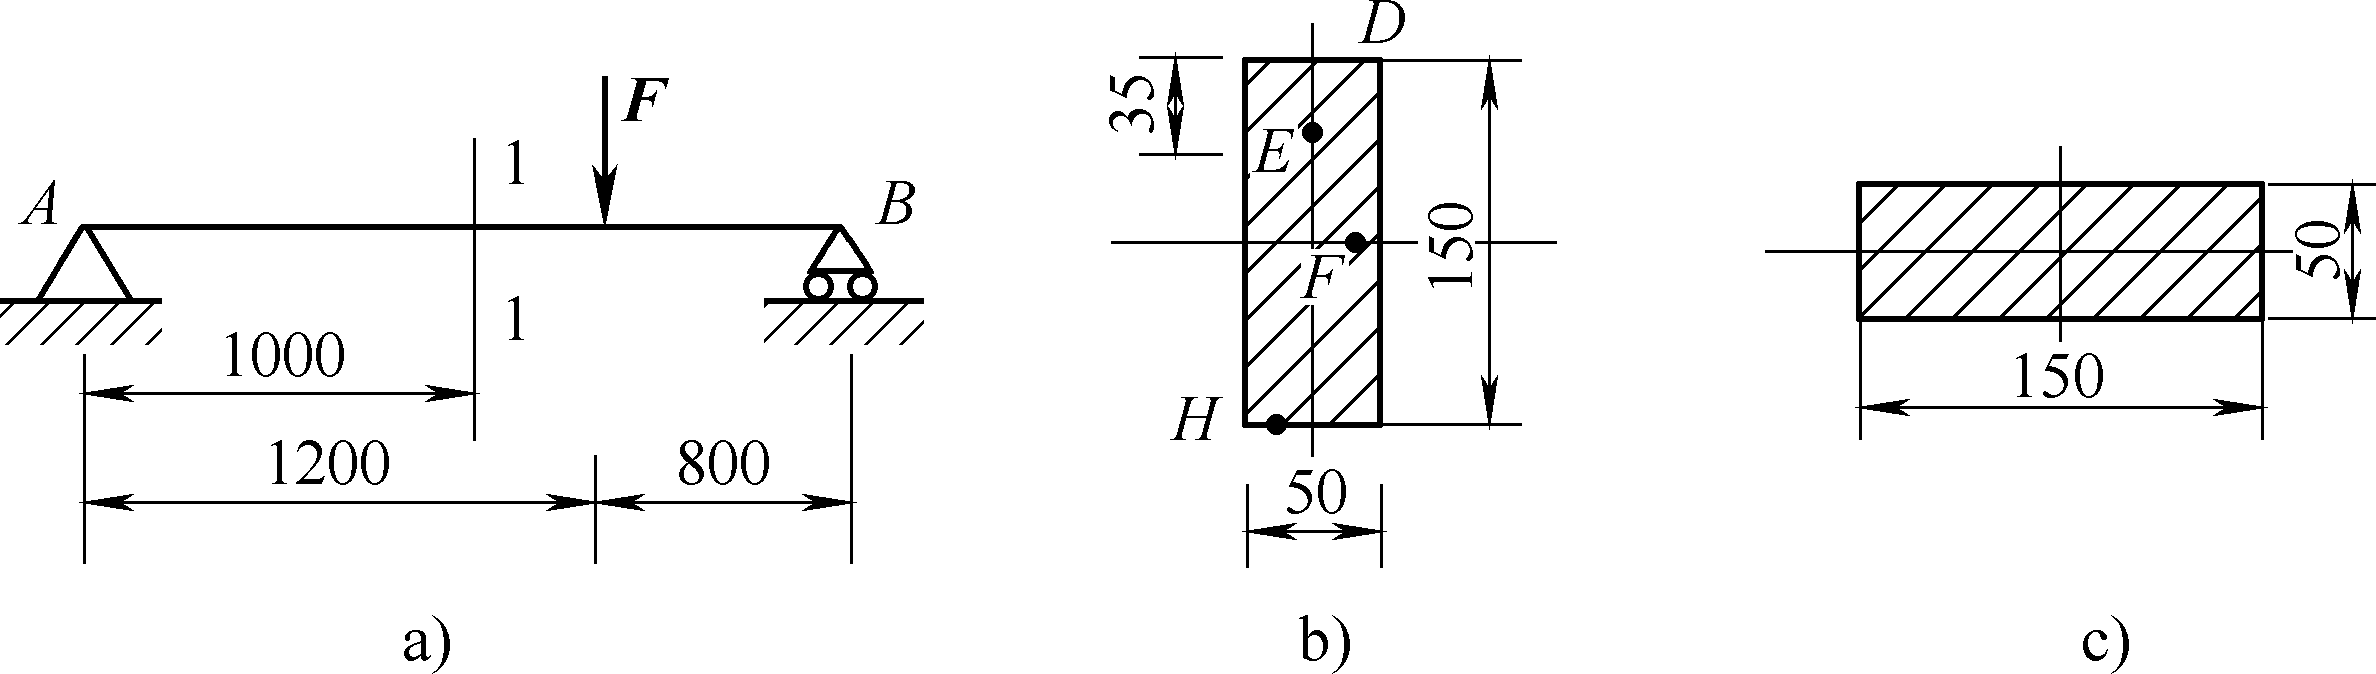 如图所示为一矩形截面简支梁。已知F=16 kN，b=50 mm，h=150 mm。试求： 若将截面转